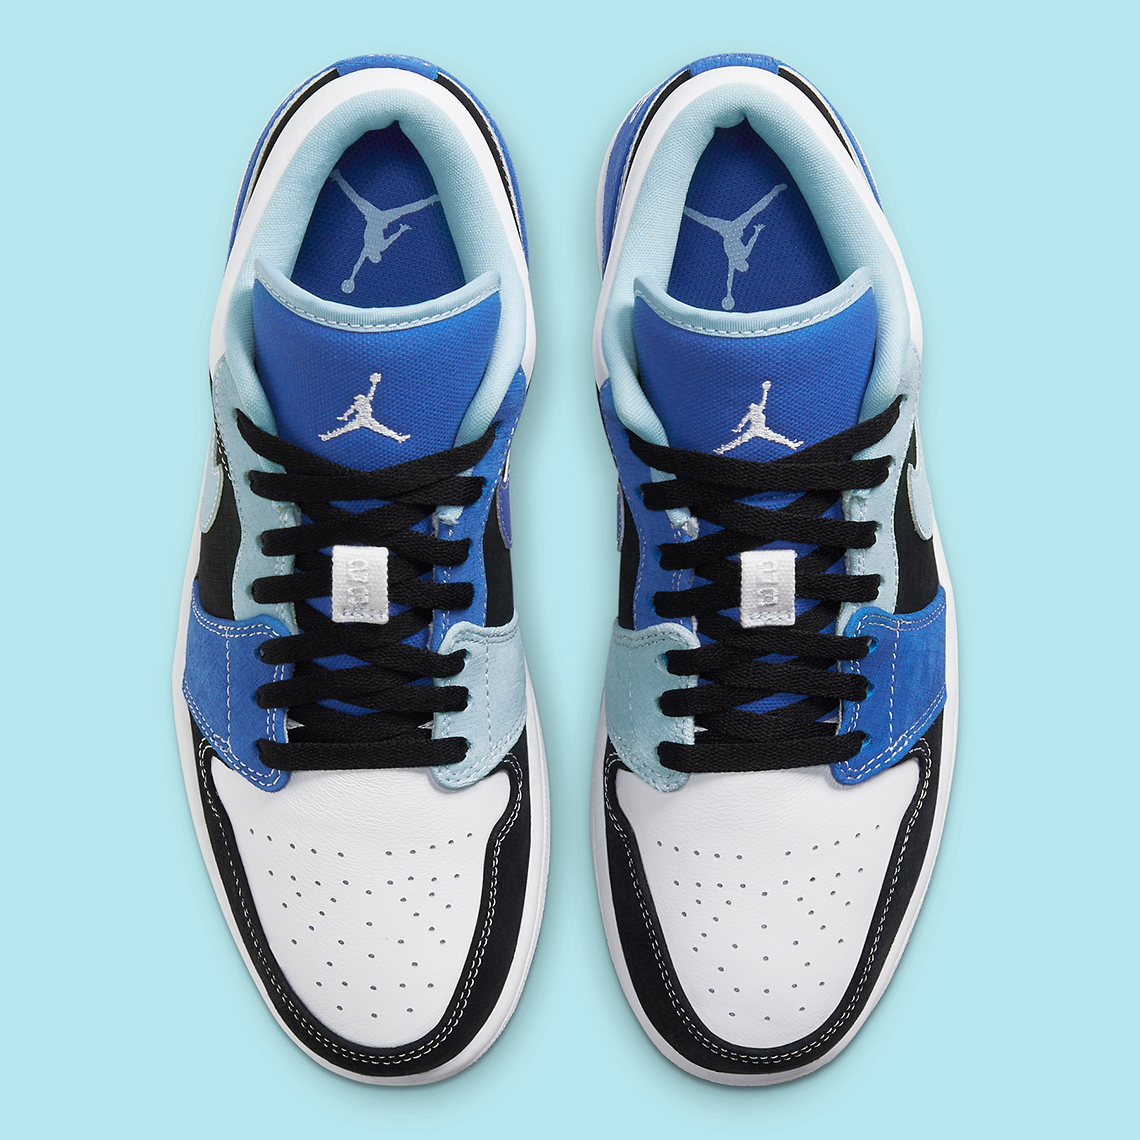 Air Jordan 1 Low Dh06 400 Release Info Sneakernews Com